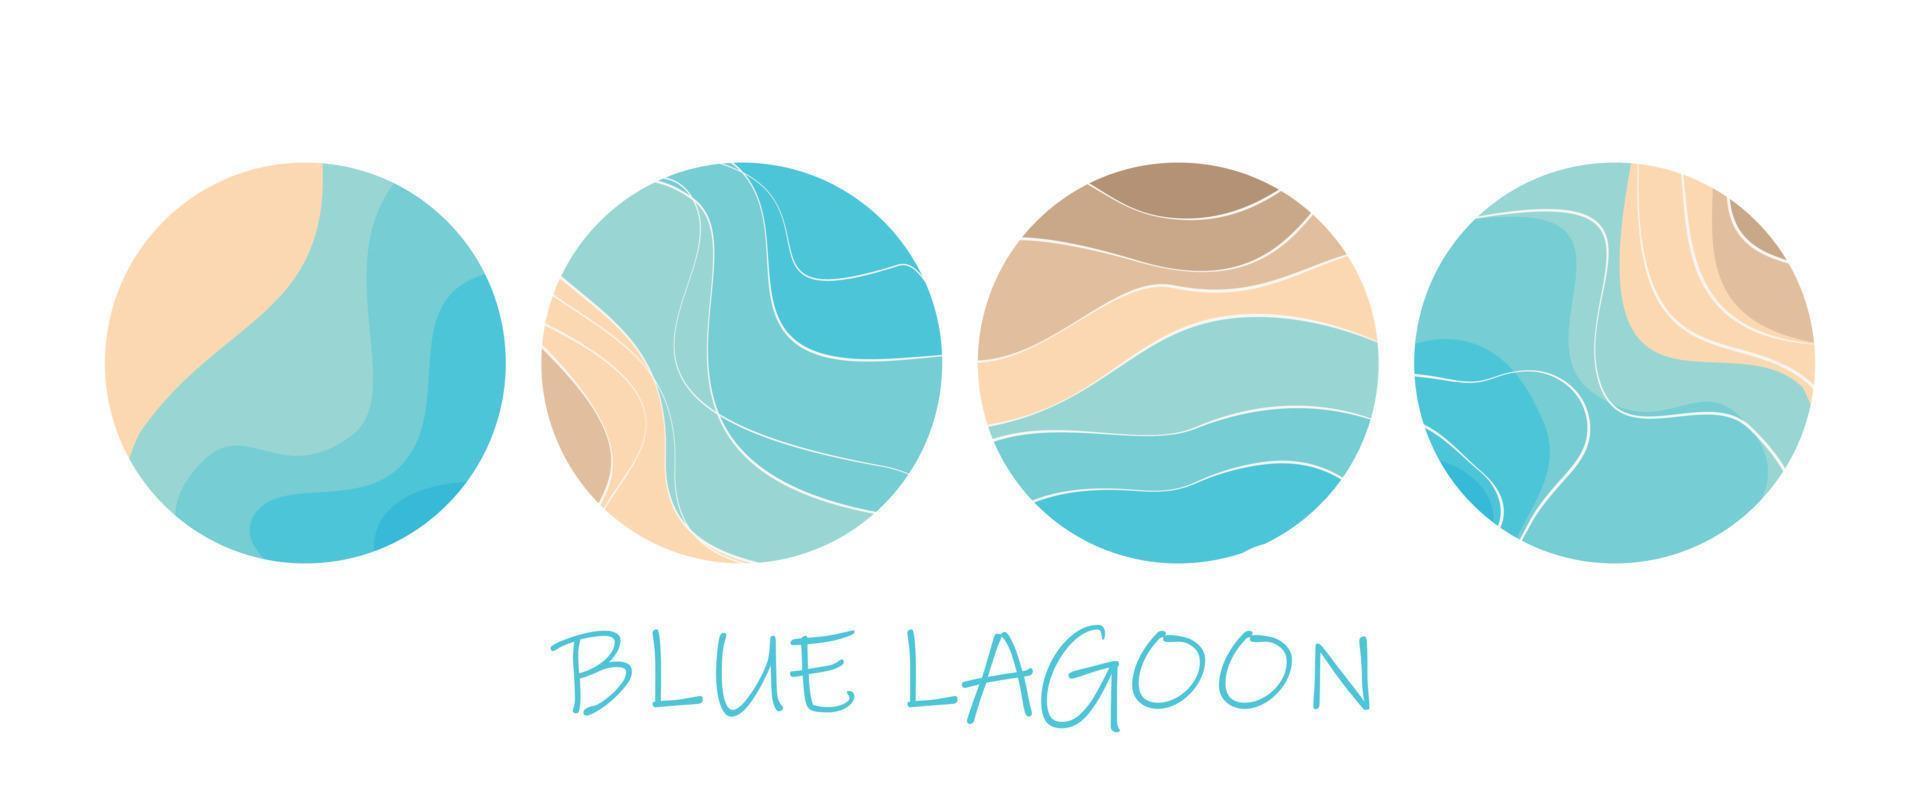 abstracte logo sjabloon. zand, zee, strand, lagune. patroon van golvende lijnen in blauw en beige. vector collectie.